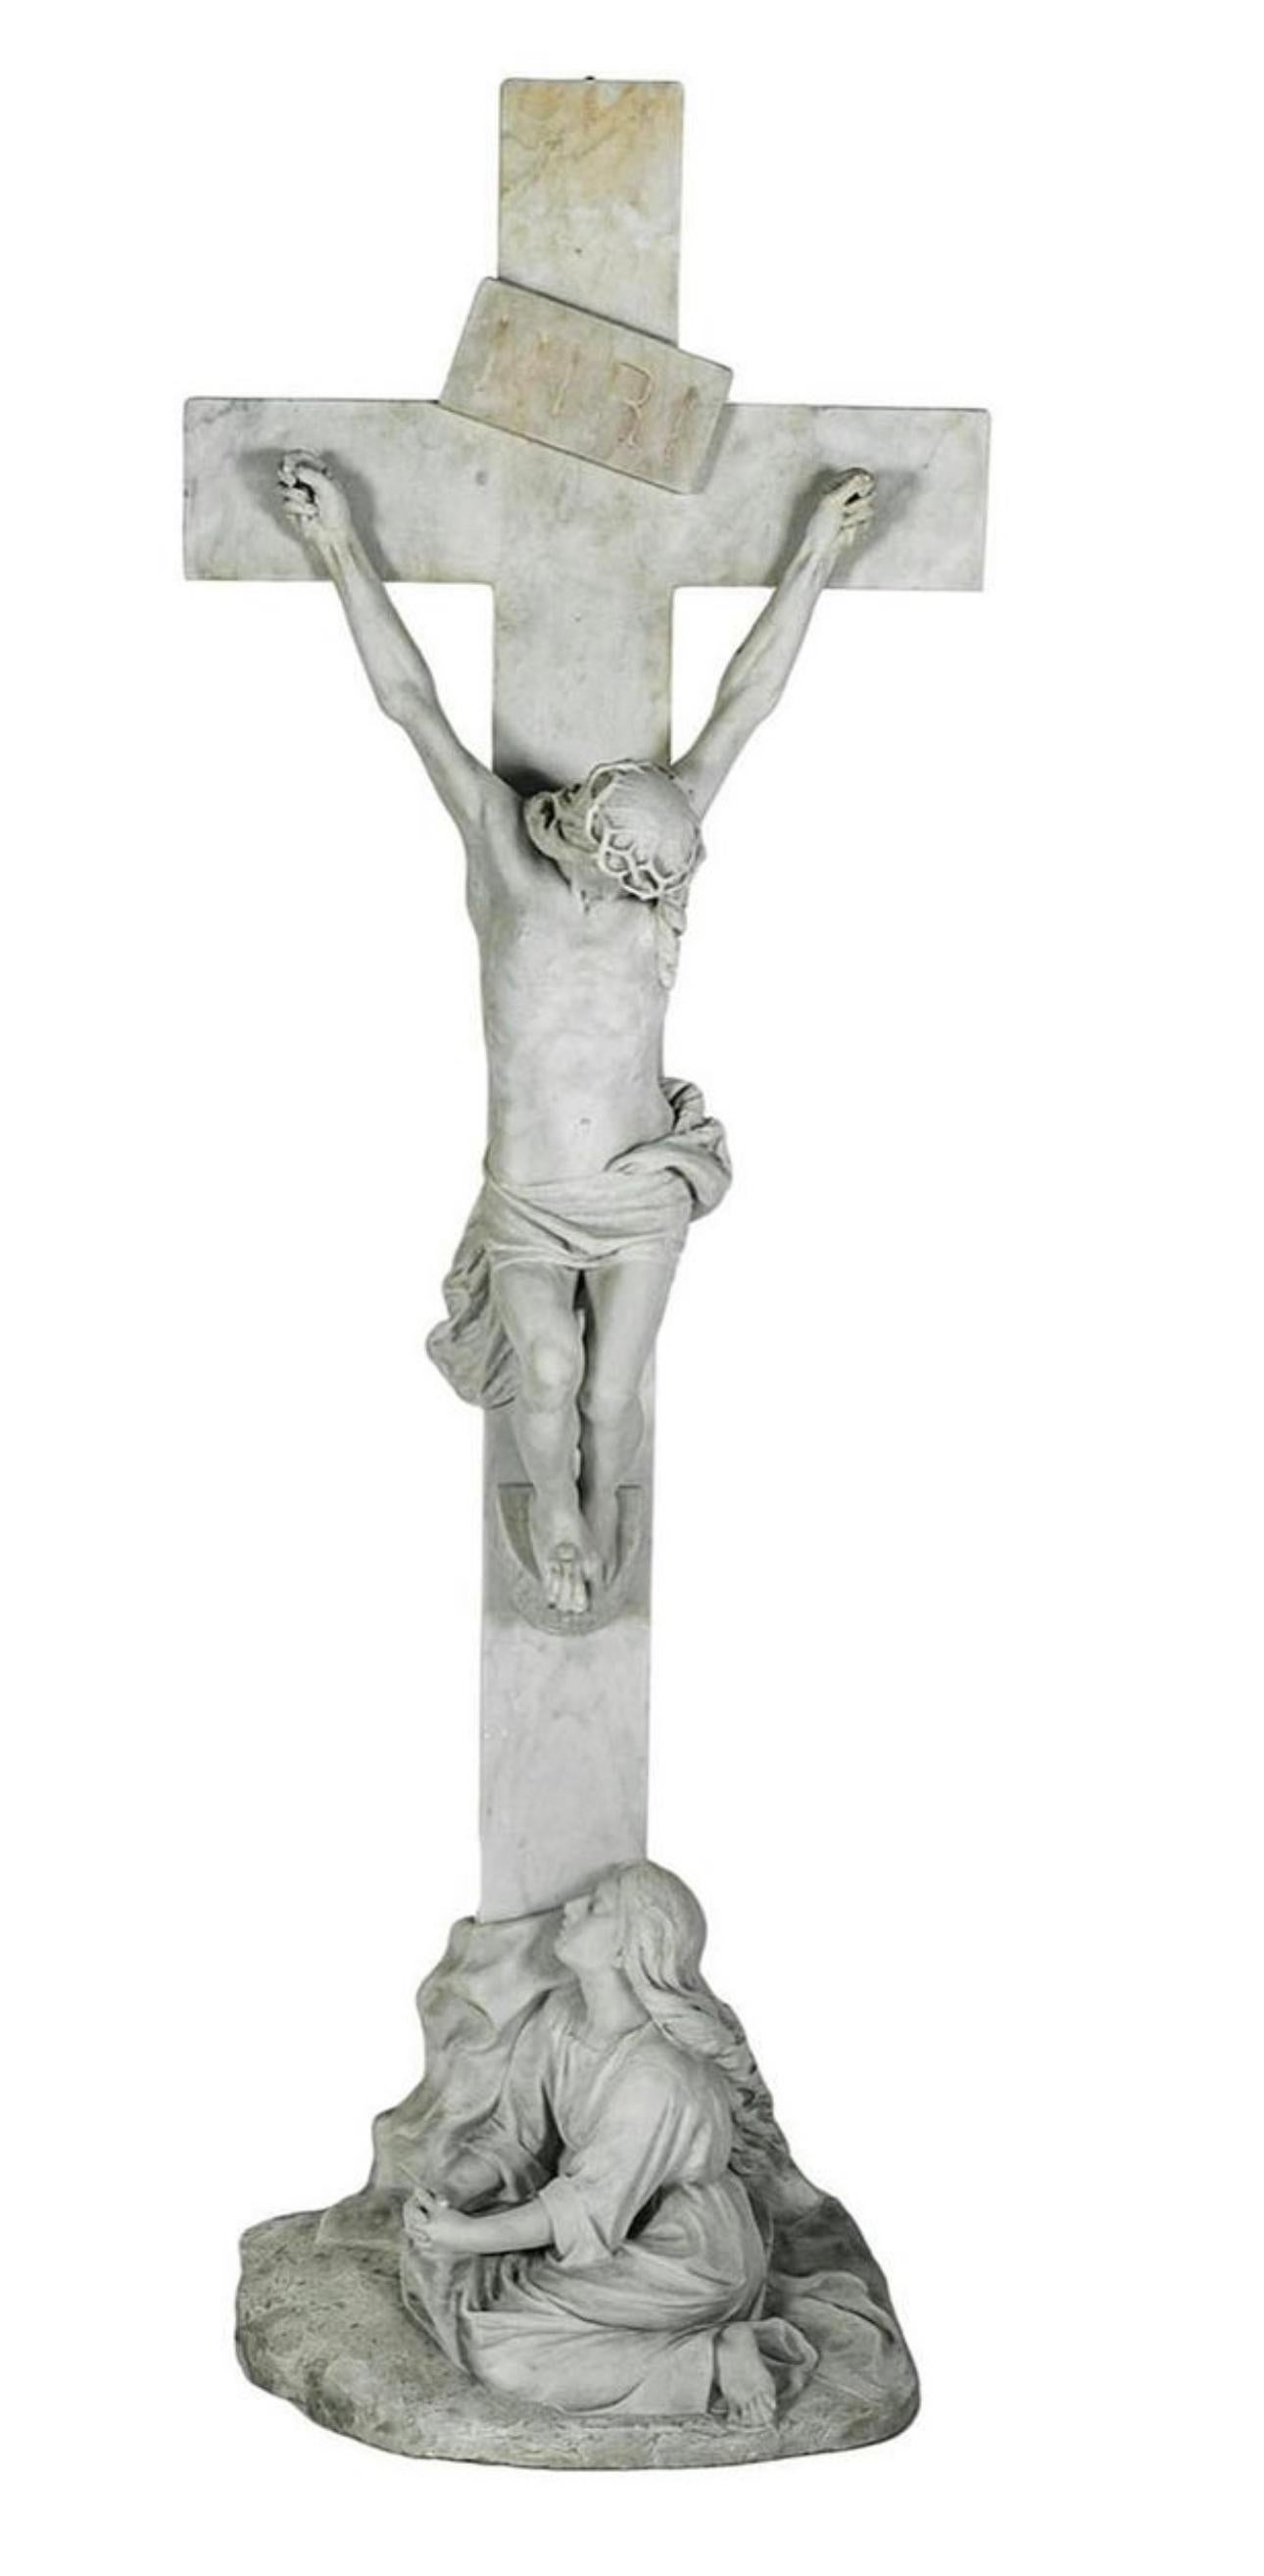 Unglaubliche Carrara Kruzifix , perfekt gemeißelt wie kein anderer, ein perfektes Stück für einen Garten oder Haus Interieur, signiert und datiert 1925 von:
J De Pari 1857 - 1931, geboren in Mailand.
Francisco Brazaghi, Schüler der Königlichen